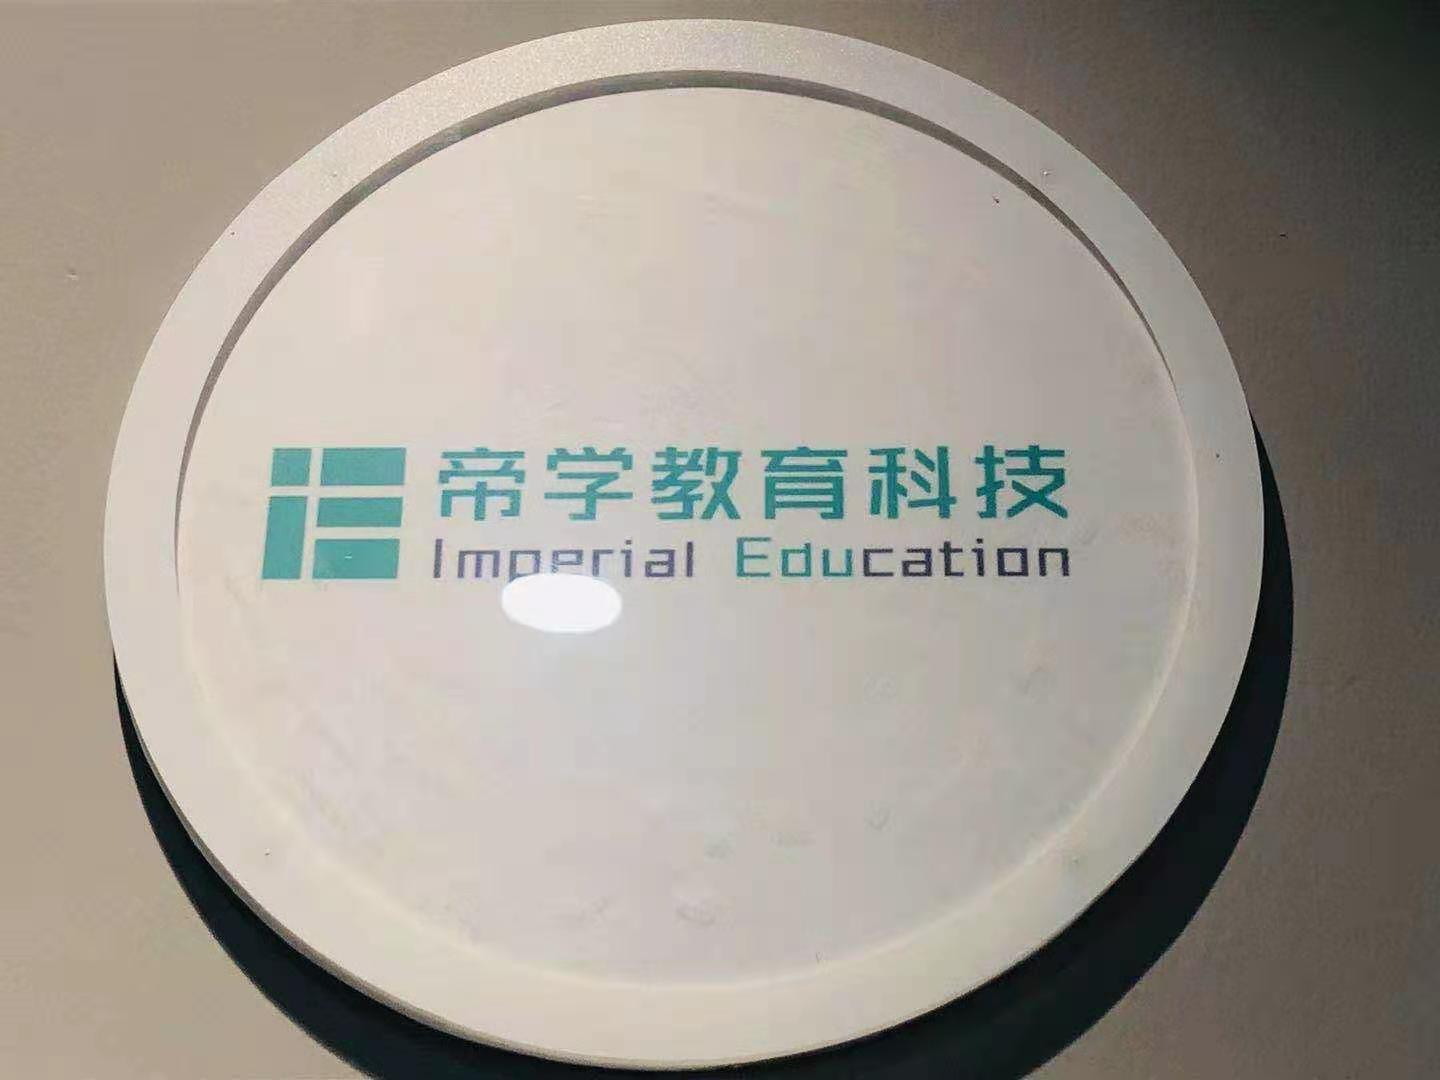 广州帝学国际教育环境图片